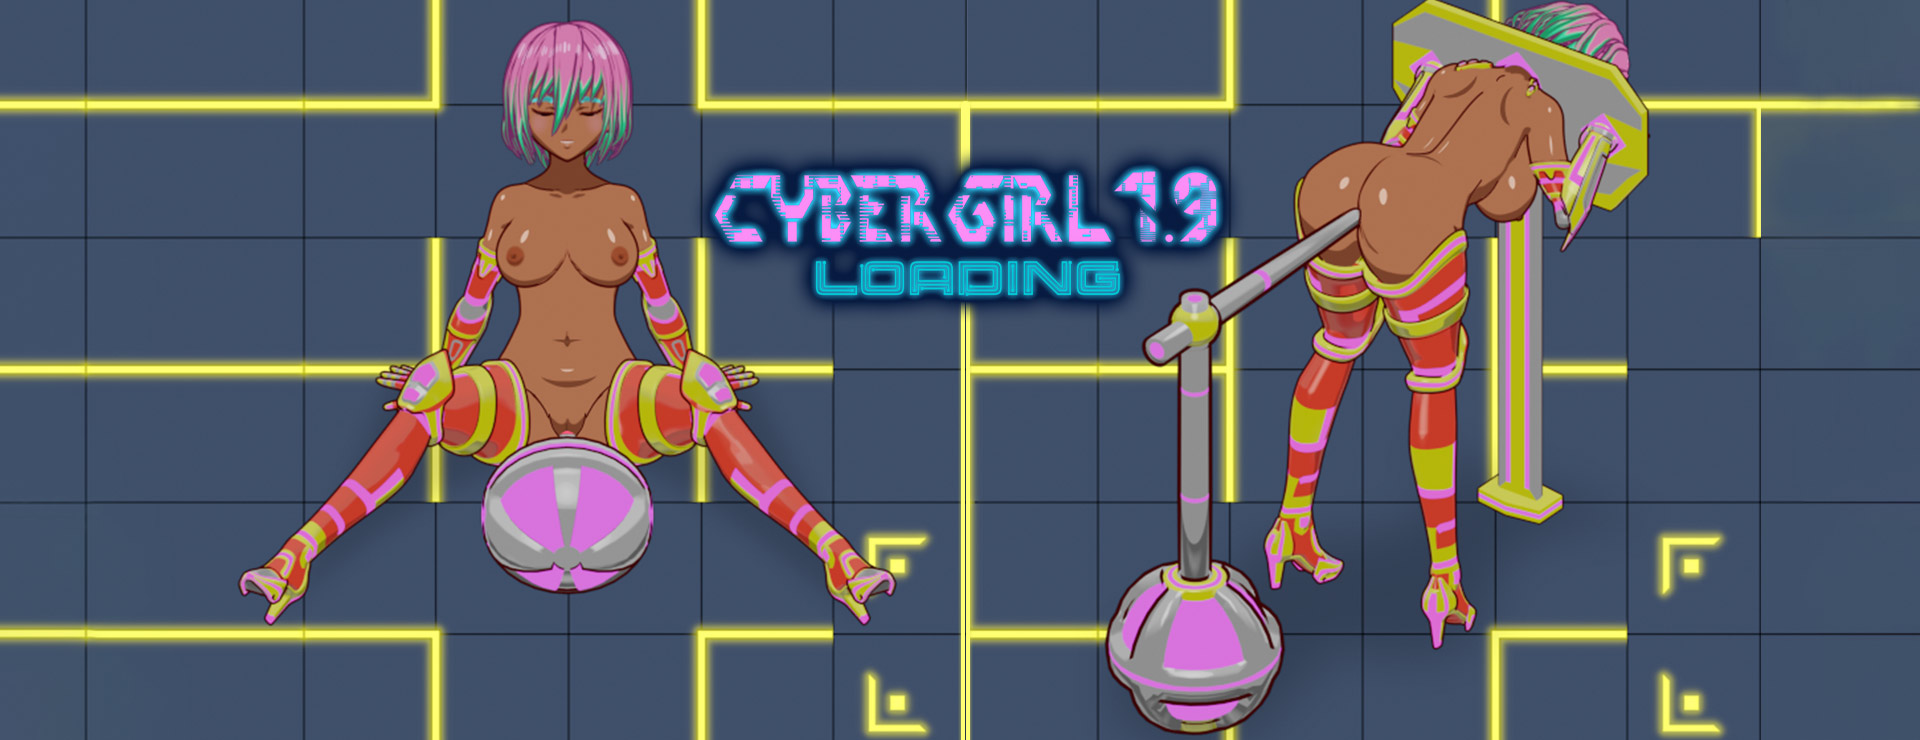 Cyber Girl 1.9 LOADING - Aventura Acción Juego